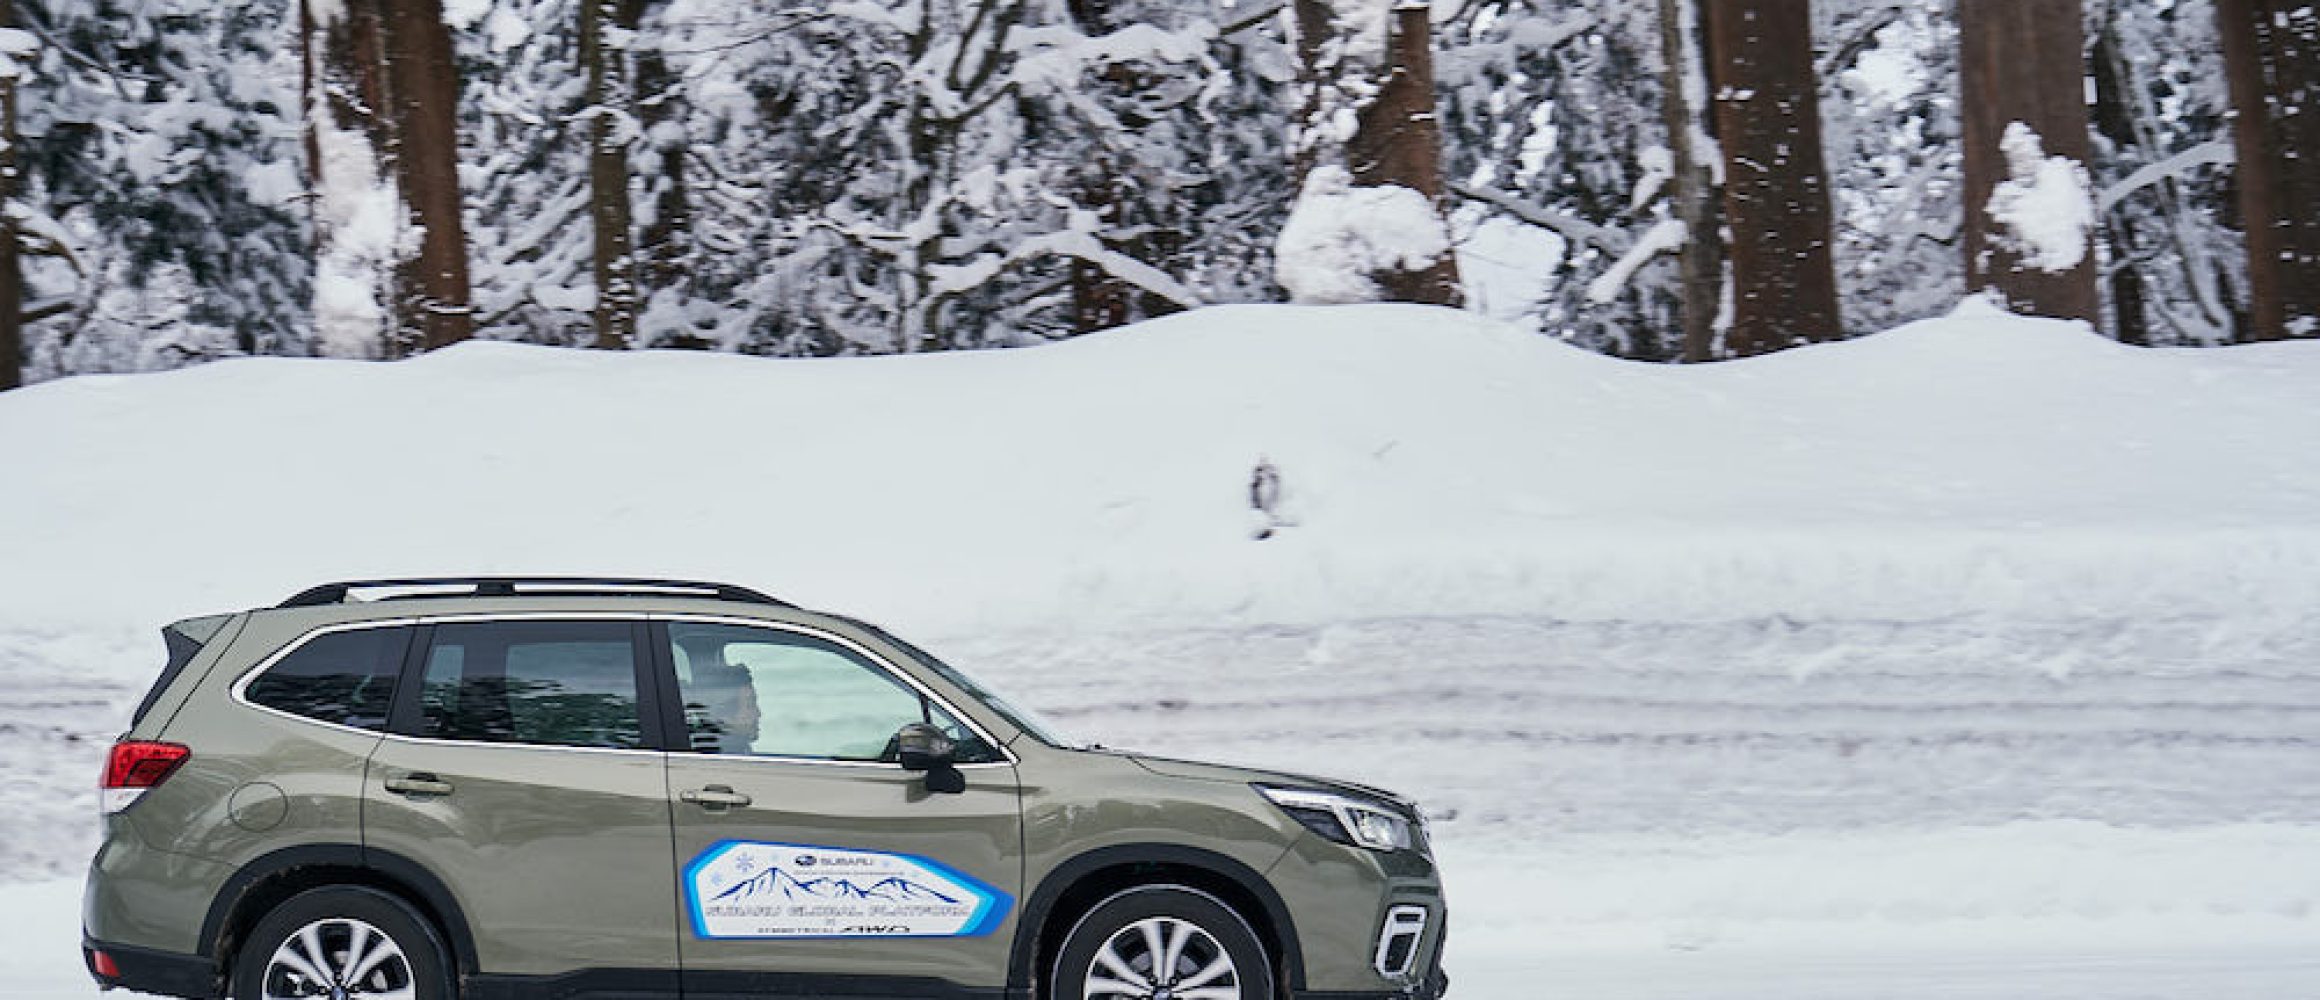 スバル人気suvのリアルな雪国性能は 山形縦断0kmツアー体験